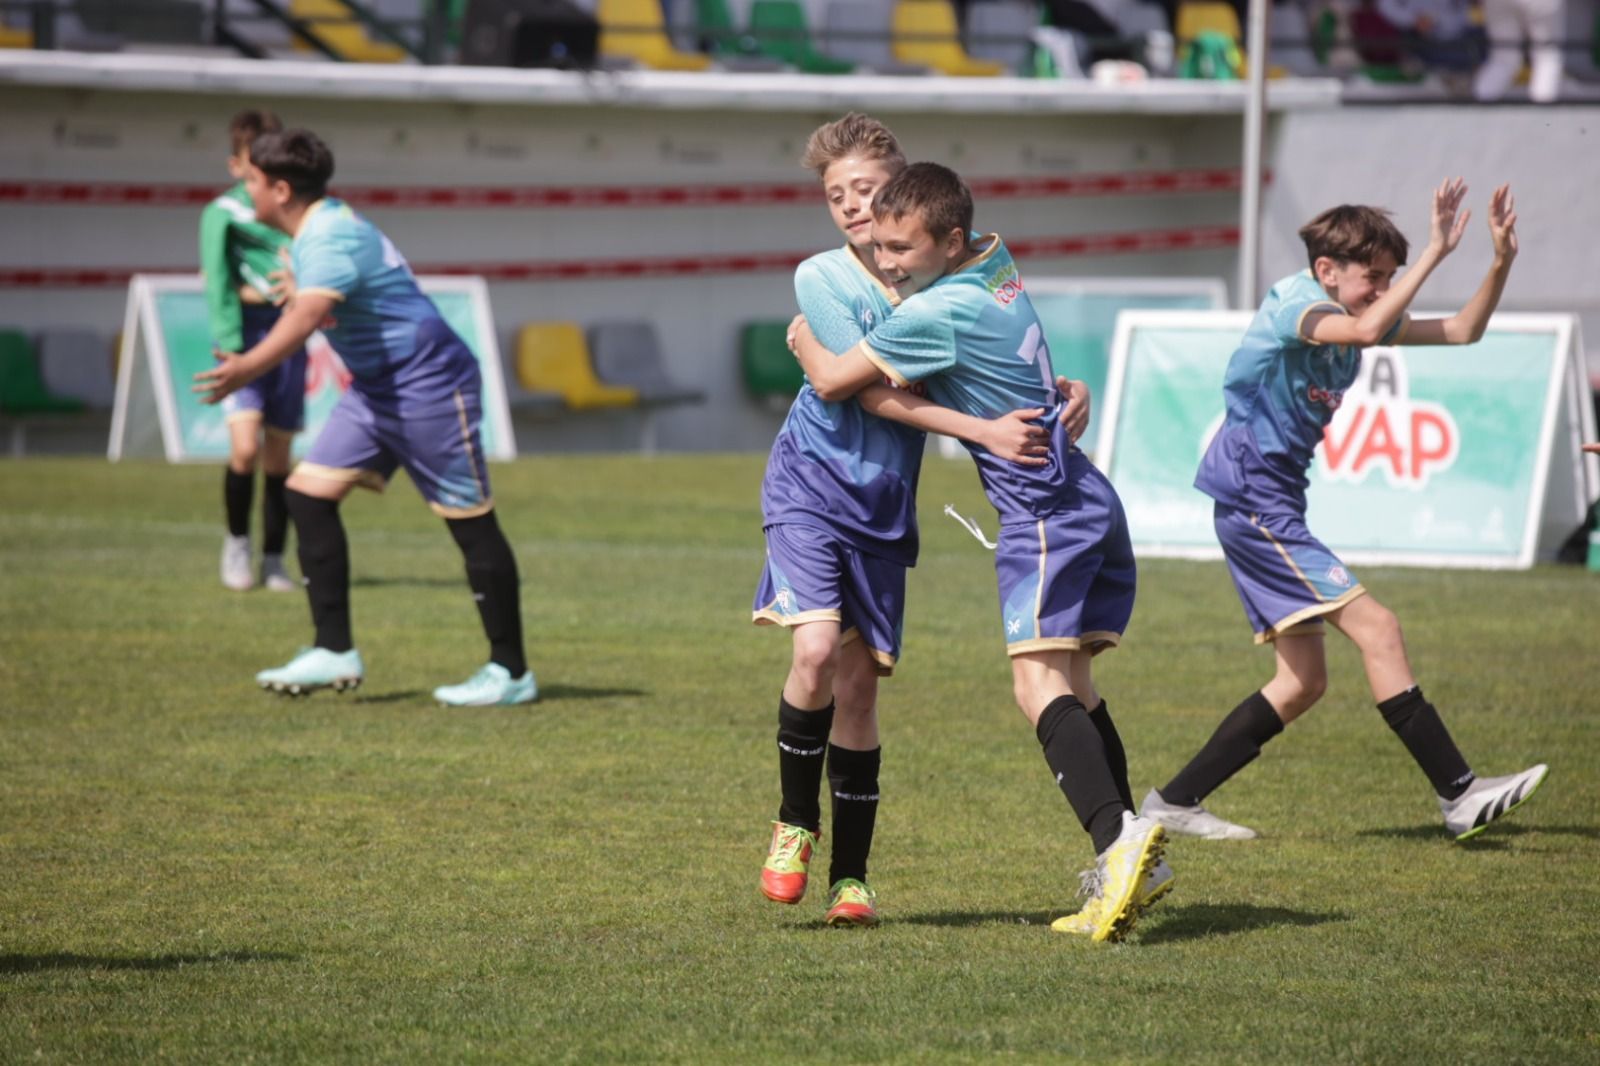 La Copa Covap en Pozoblanco: las imágenes de una jornada de deporte y vida sana